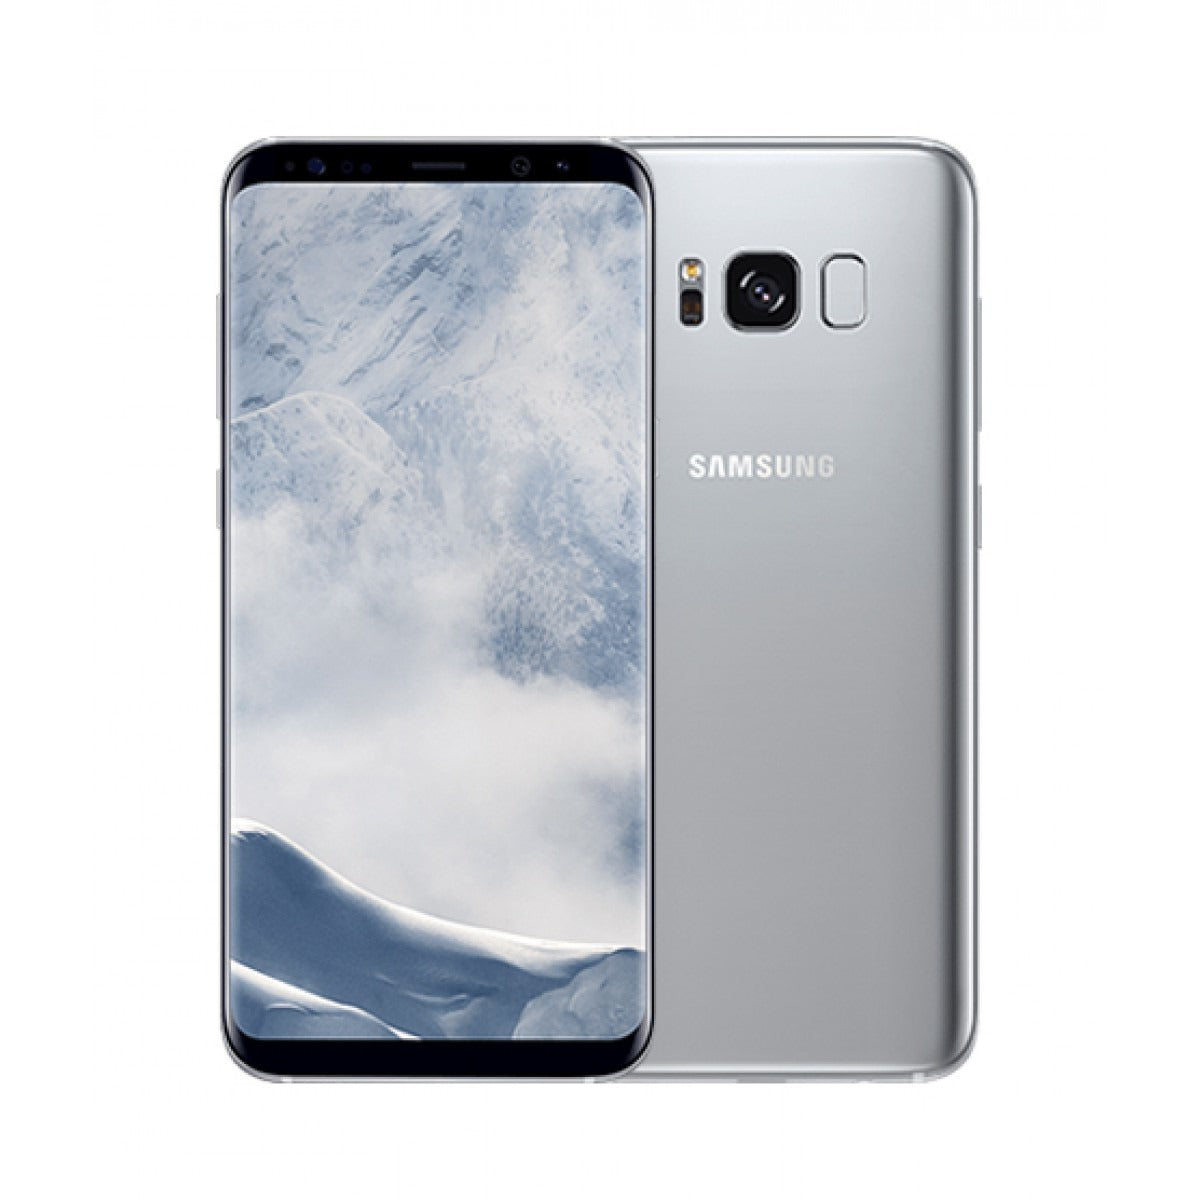 Samsung Galaxy S8+ - 64 GB - Arctic Silver - Verizon - CDMA/GSM